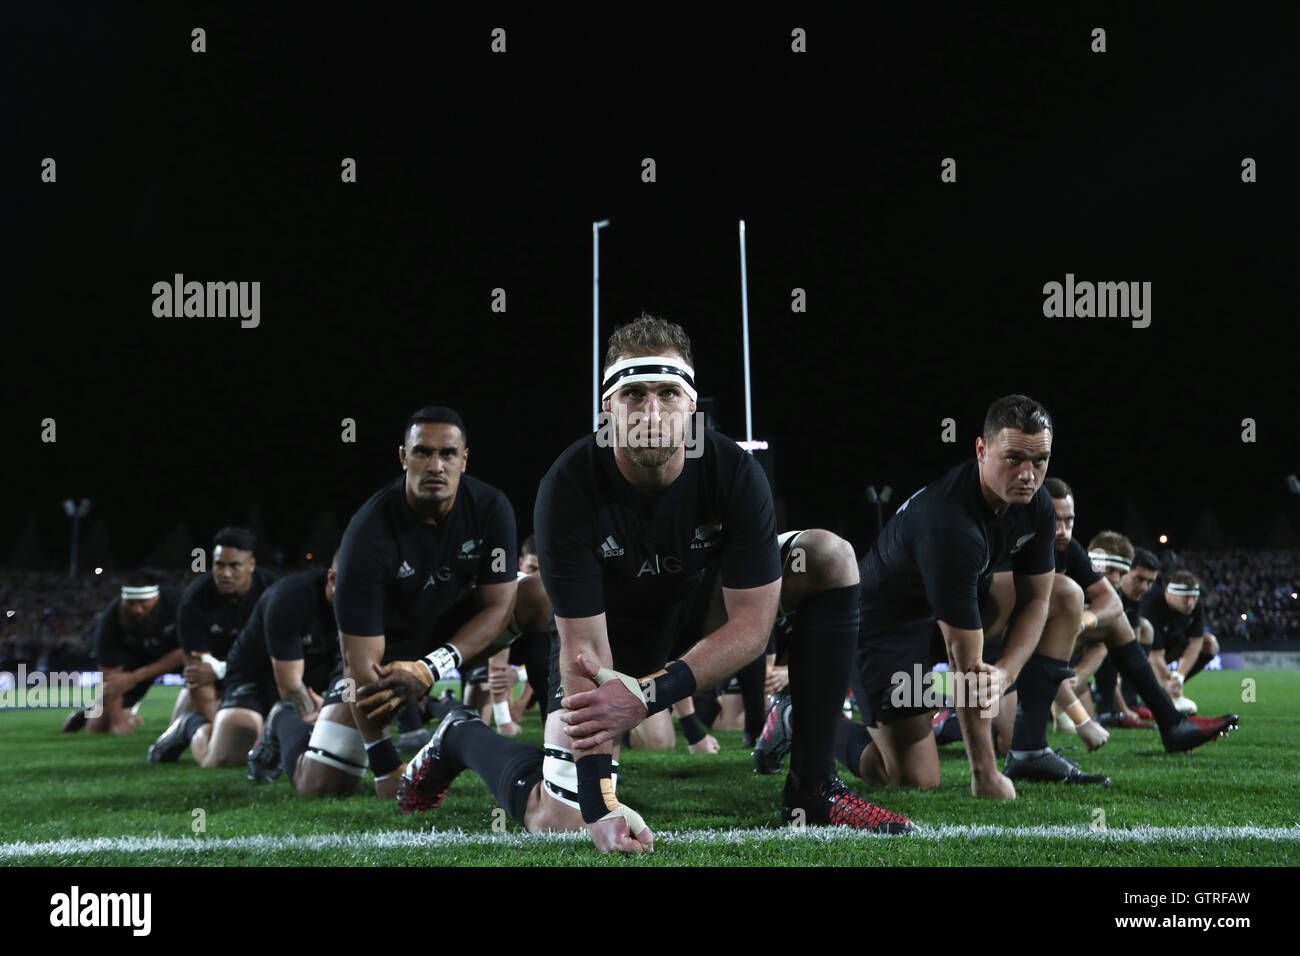 loto guerra Ganar Hamilton, Nueva Zelanda. 10 Sep, 2016. El Campeonato de Rugby Nueva Zelanda All  Blacks vs. Argentina Pumas. Kieran leer de los All Blacks lidera el  campeonato de rugby haka durante el partido